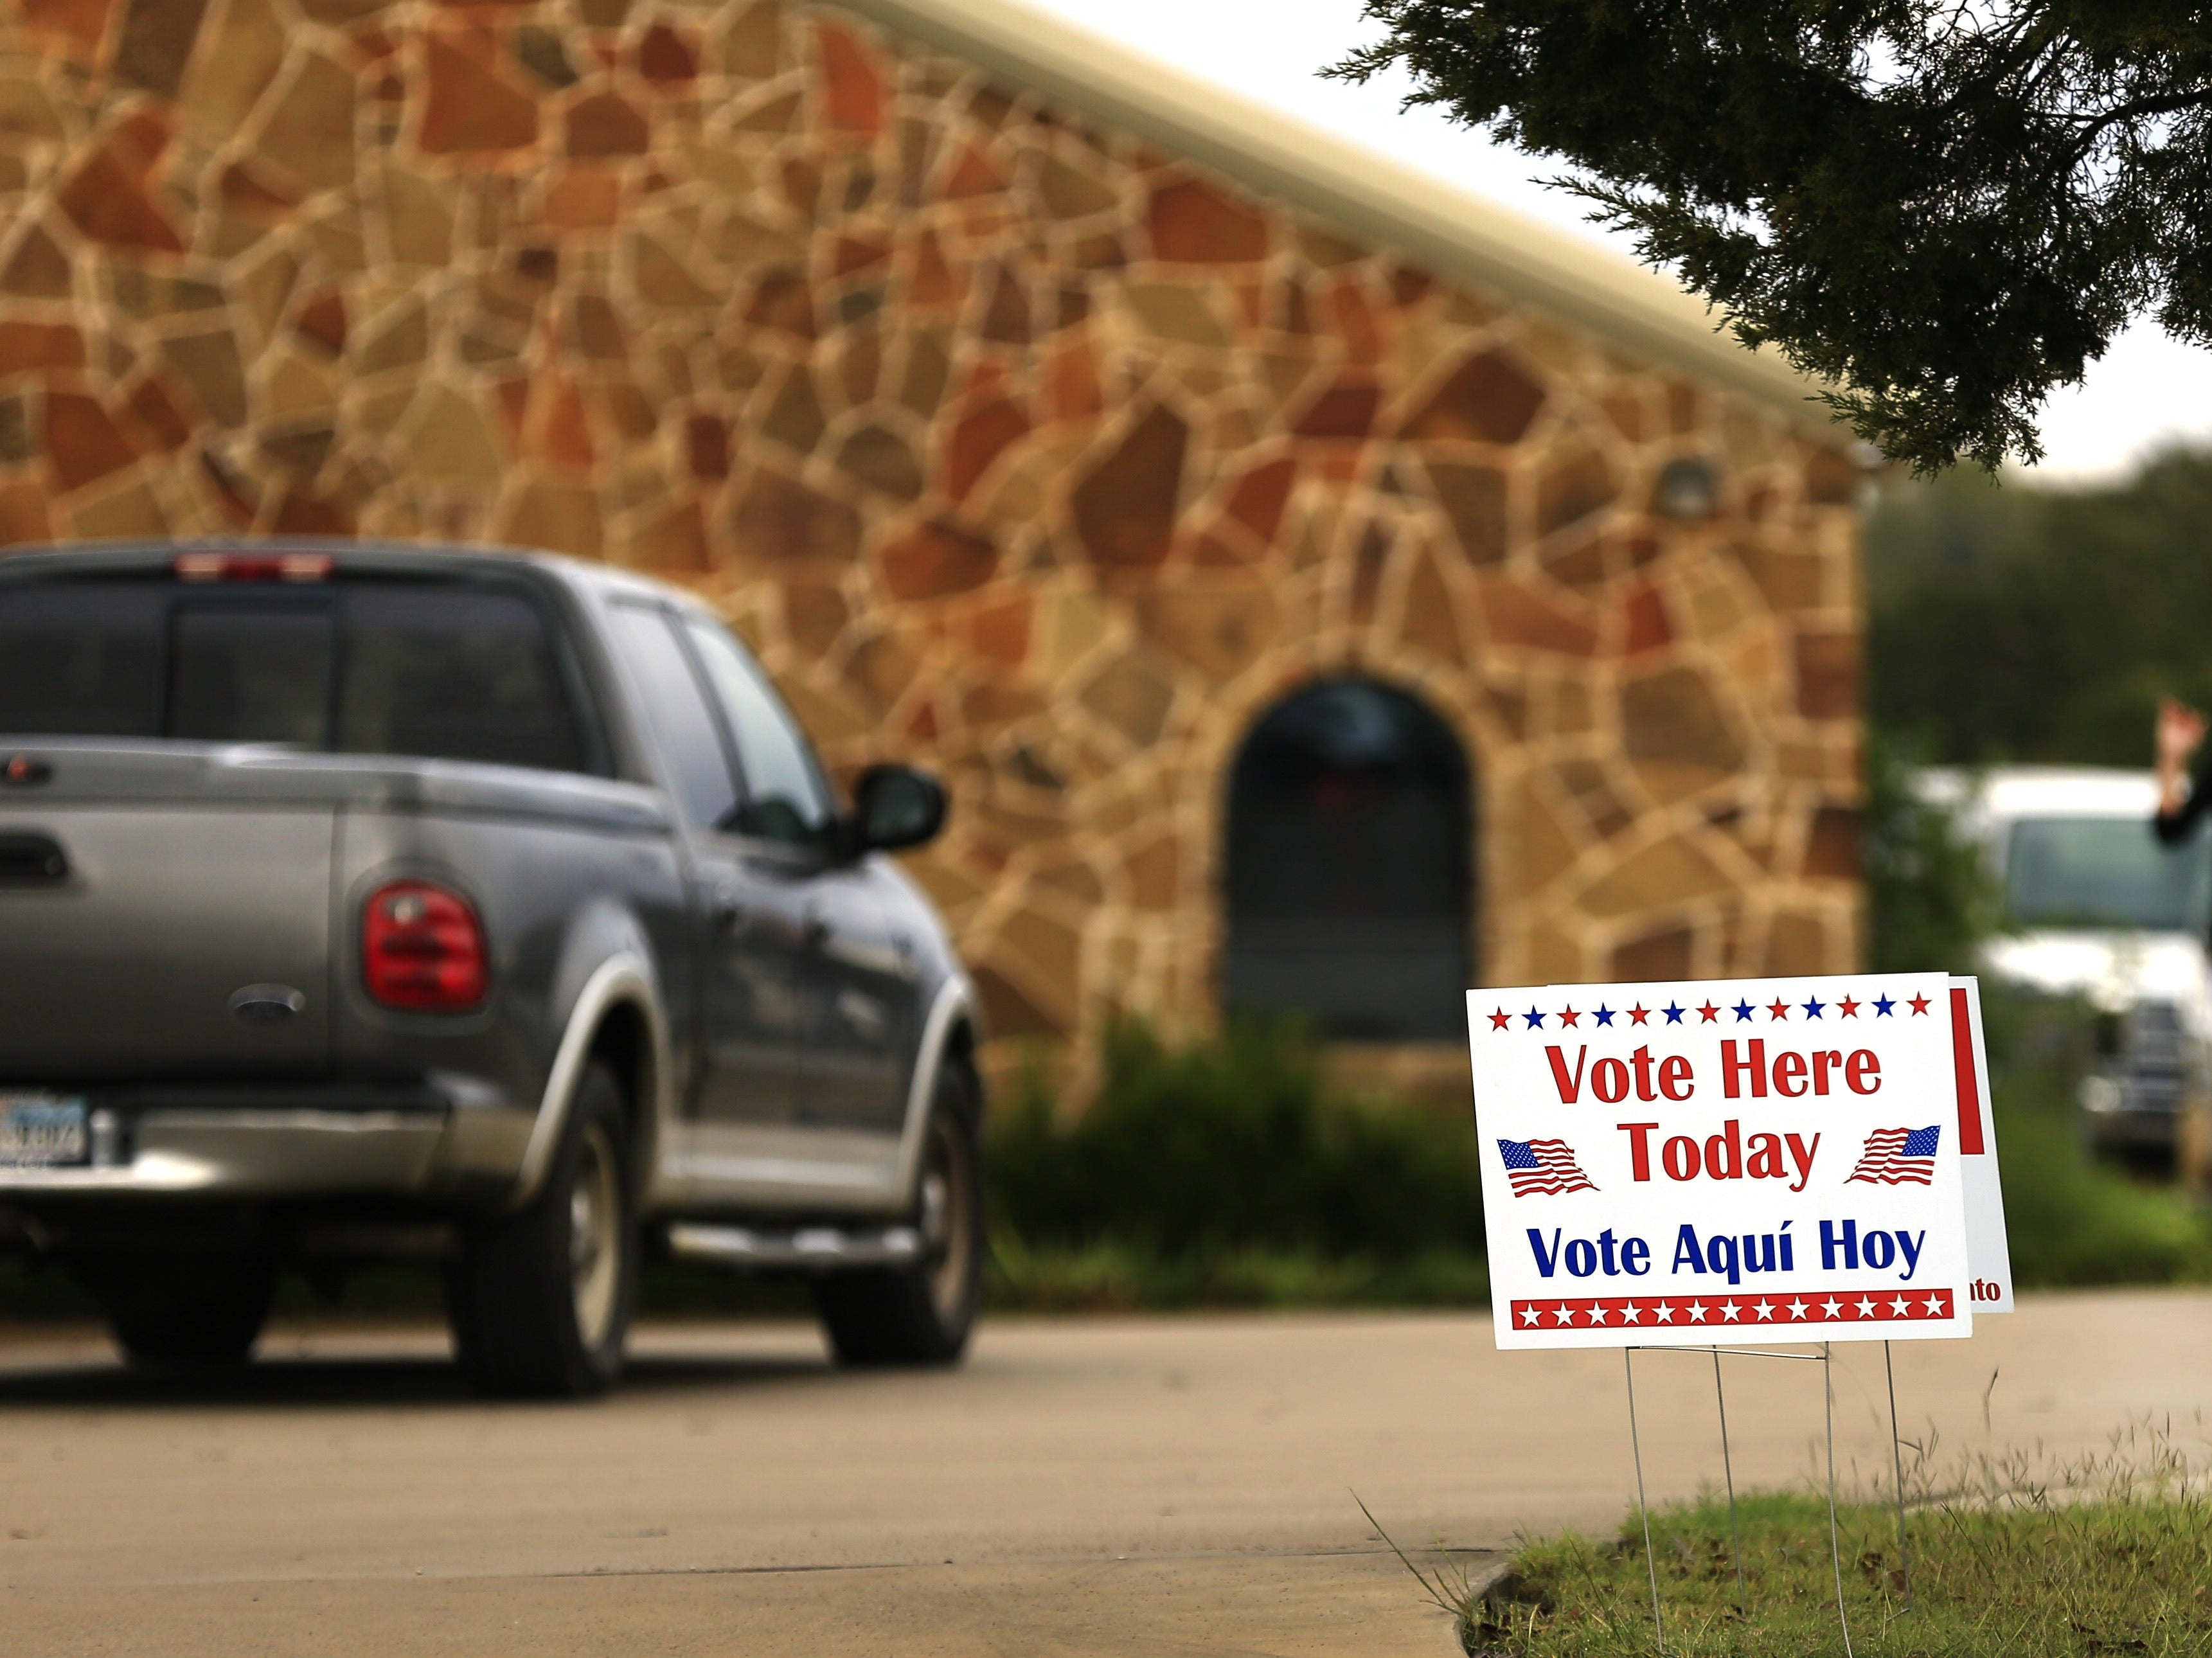 Los votantes llegan a un lugar de votación para emitir su voto el 8 de noviembre de 2016 en Brock, Texas.